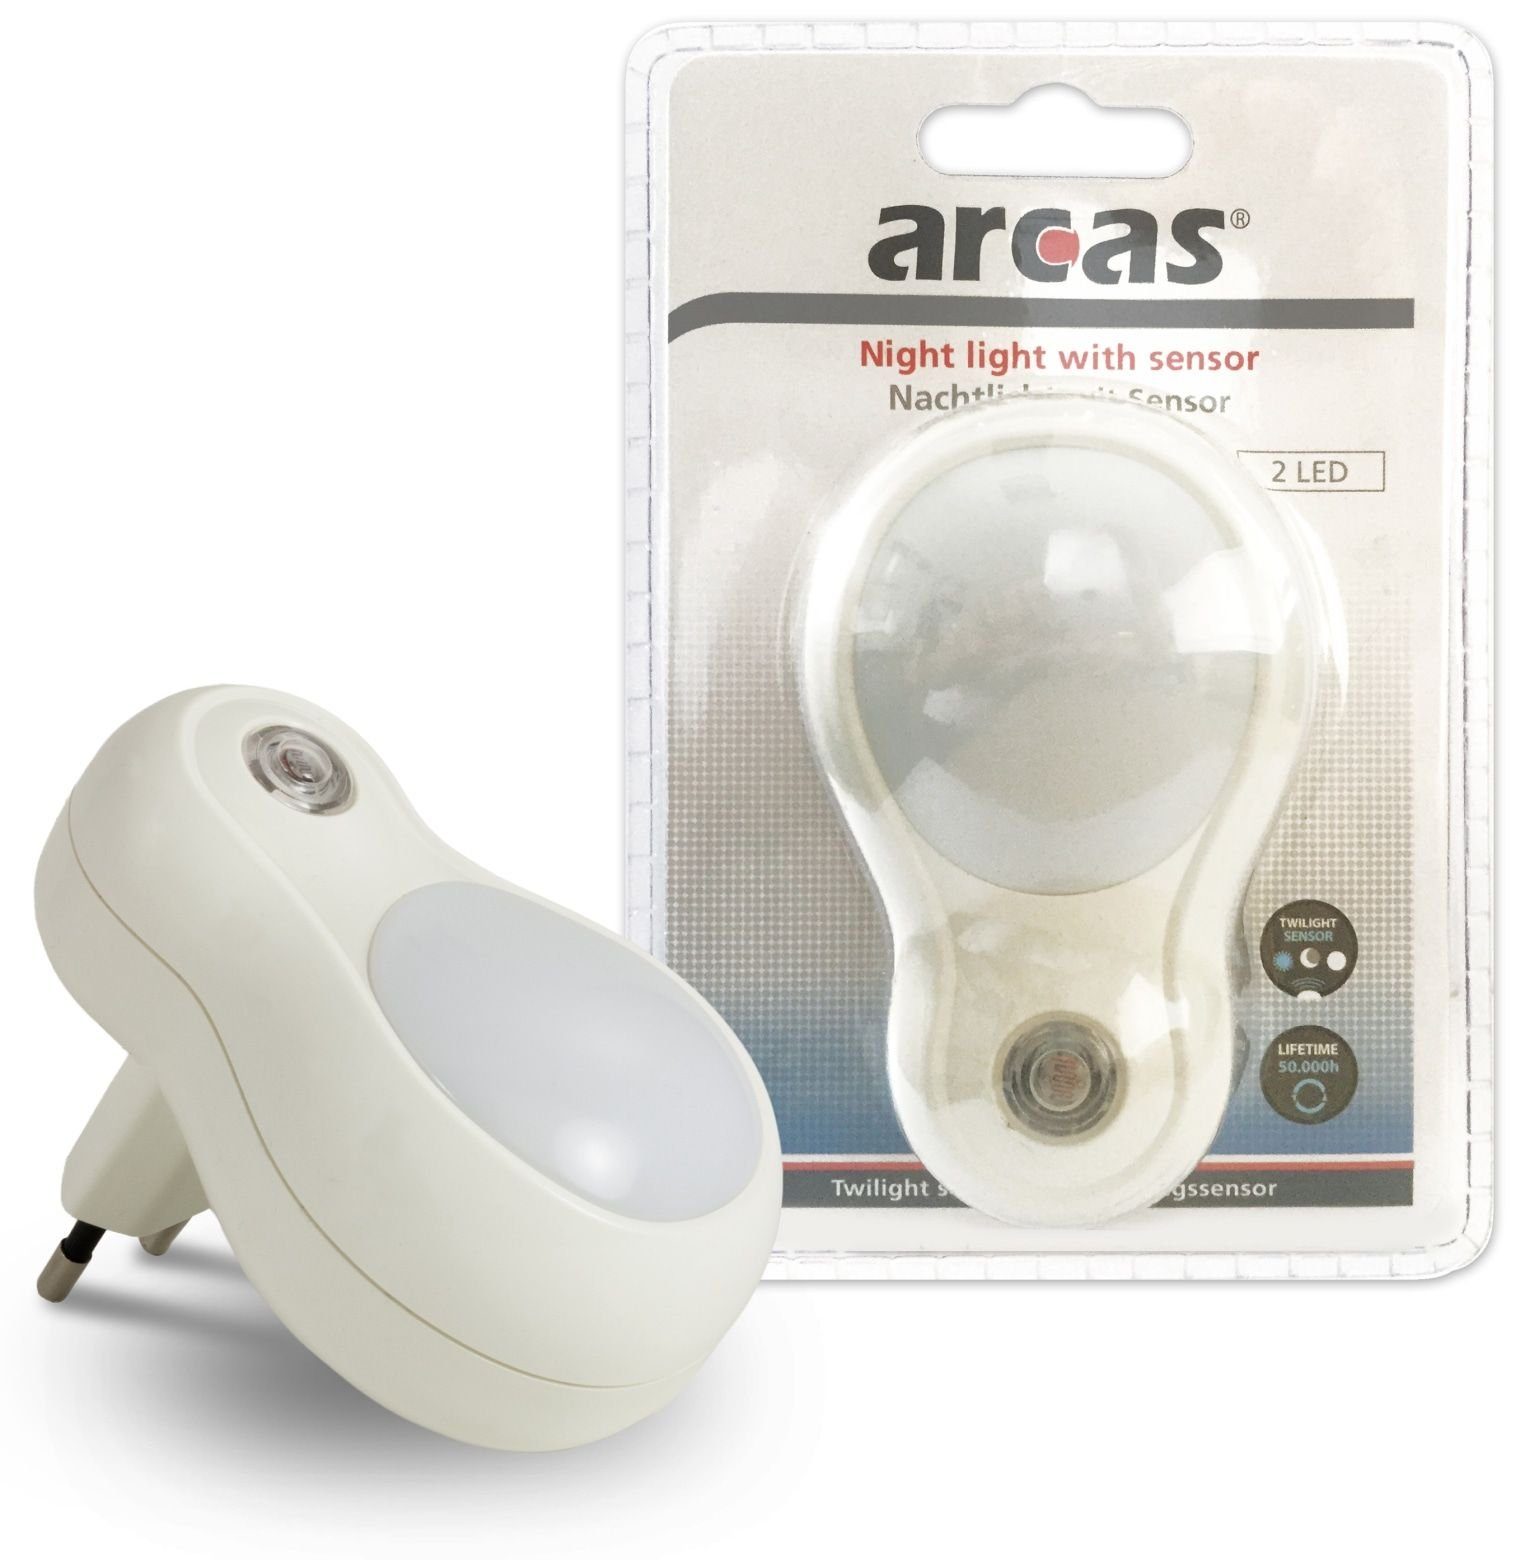 V~ 230 mit Nachtlicht Sensor, 30740011 Arcas Nachtlicht ARCAS